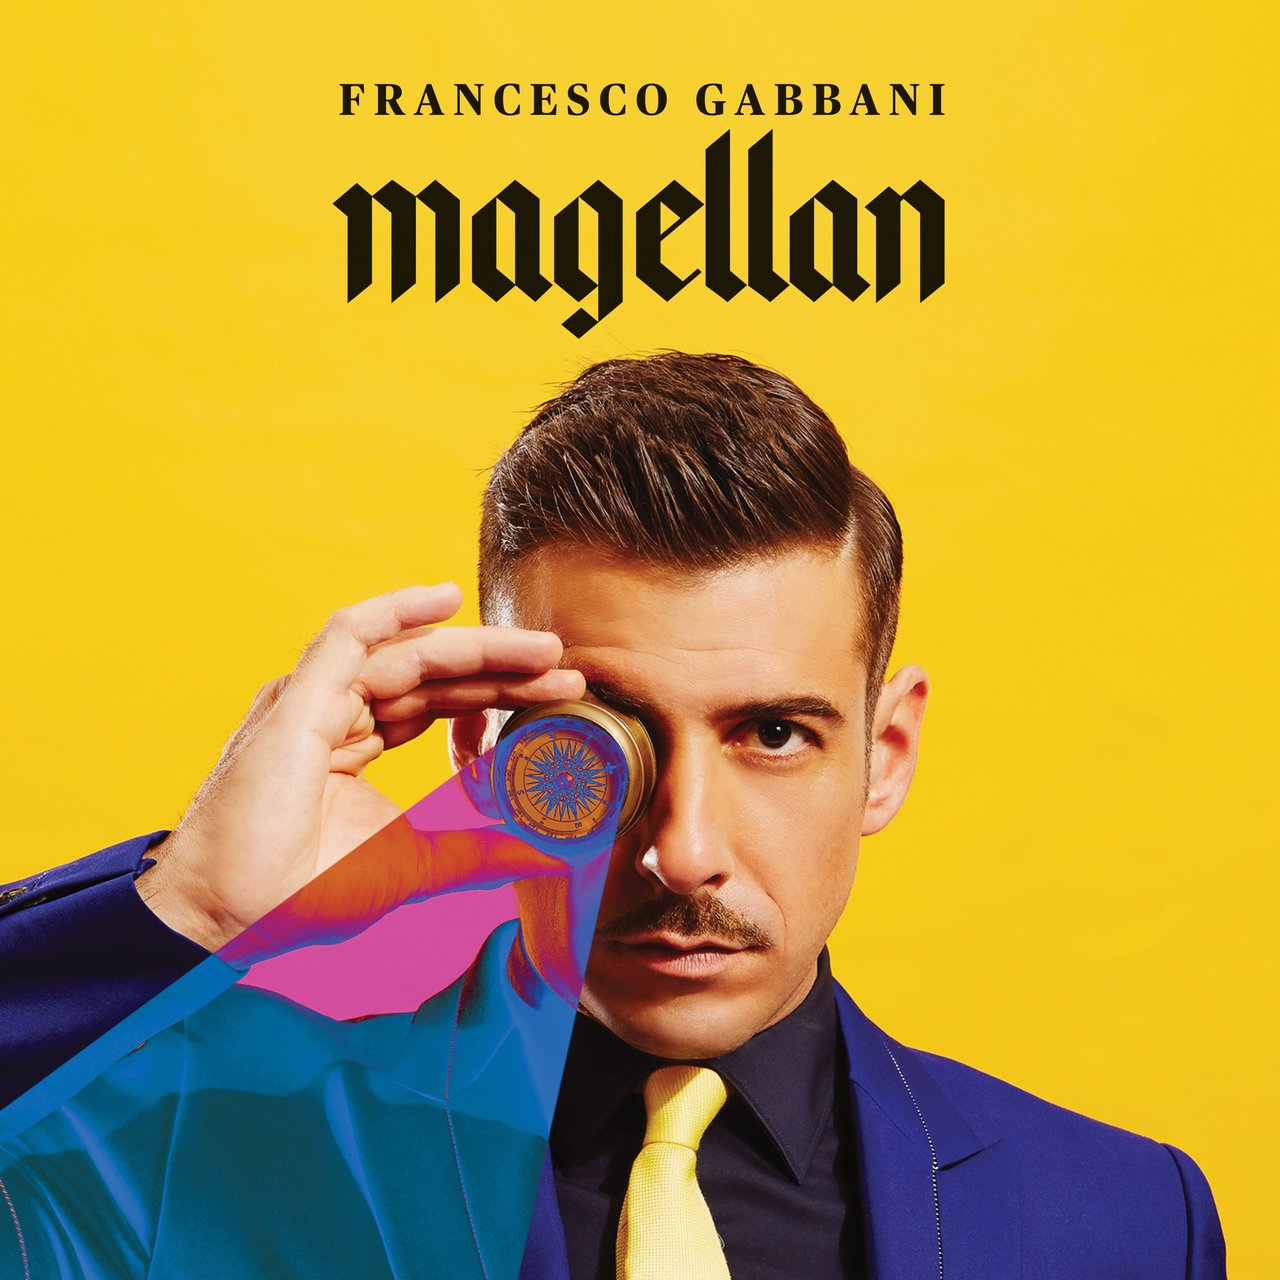 Francesco Gabbani — La mia versione dei ricordi cover artwork